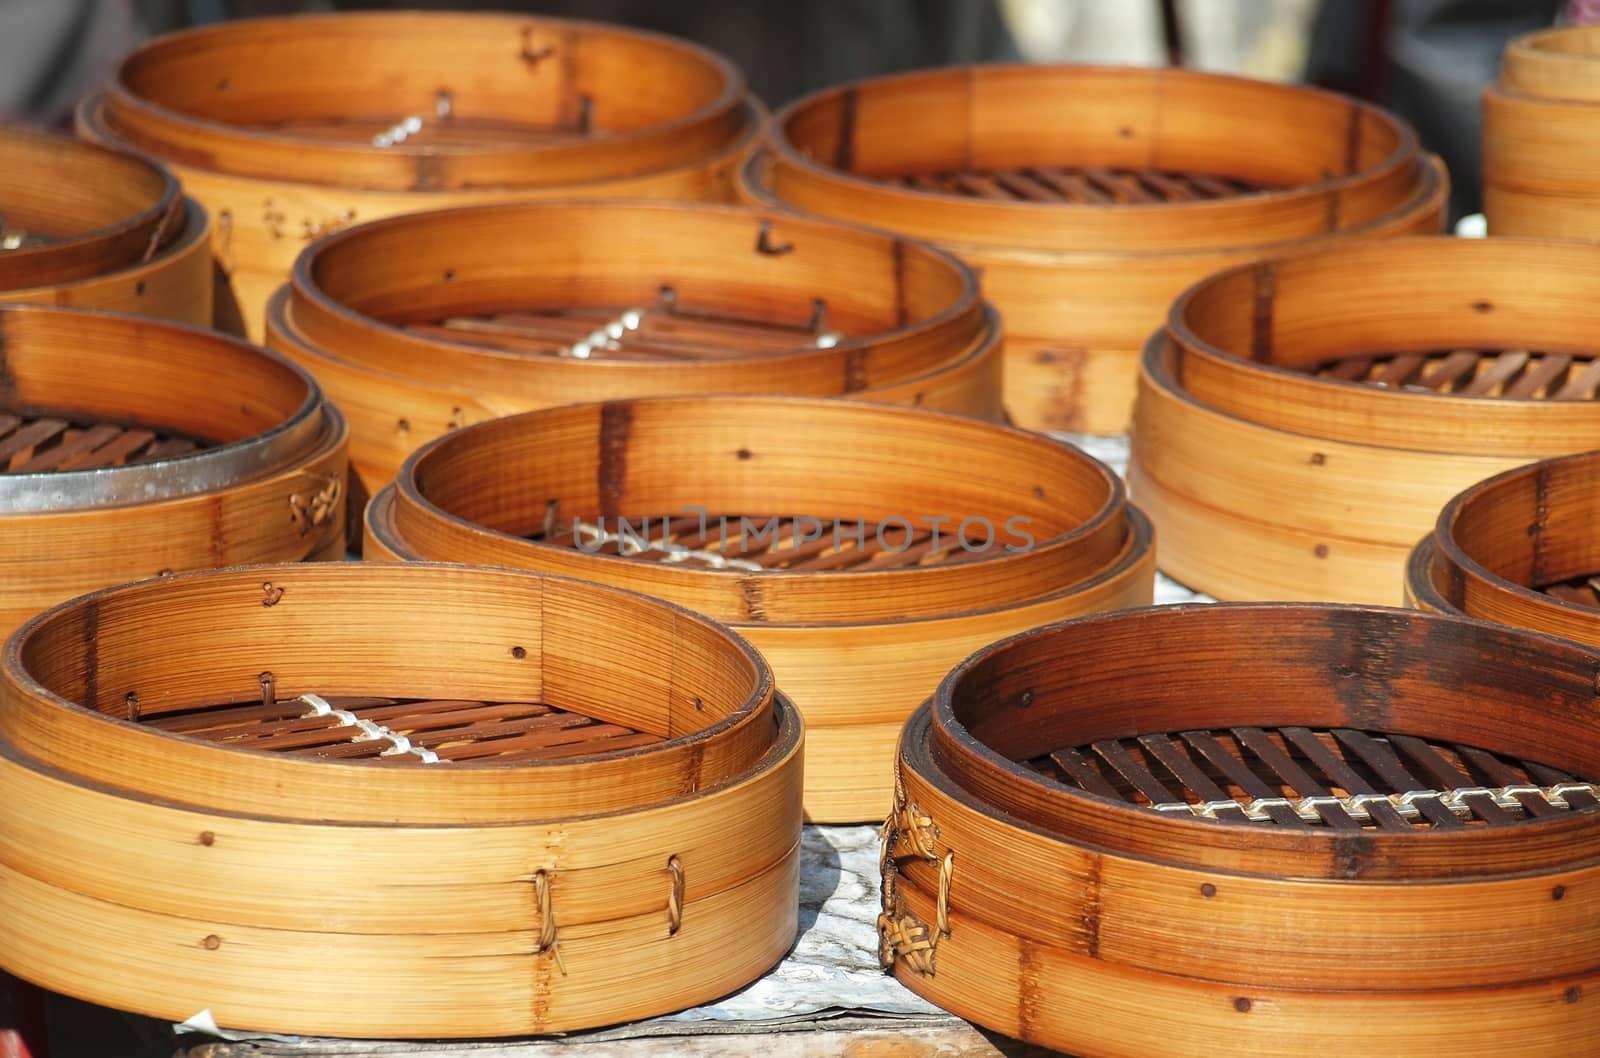 Chinese Bamboo Steamers by shiyali